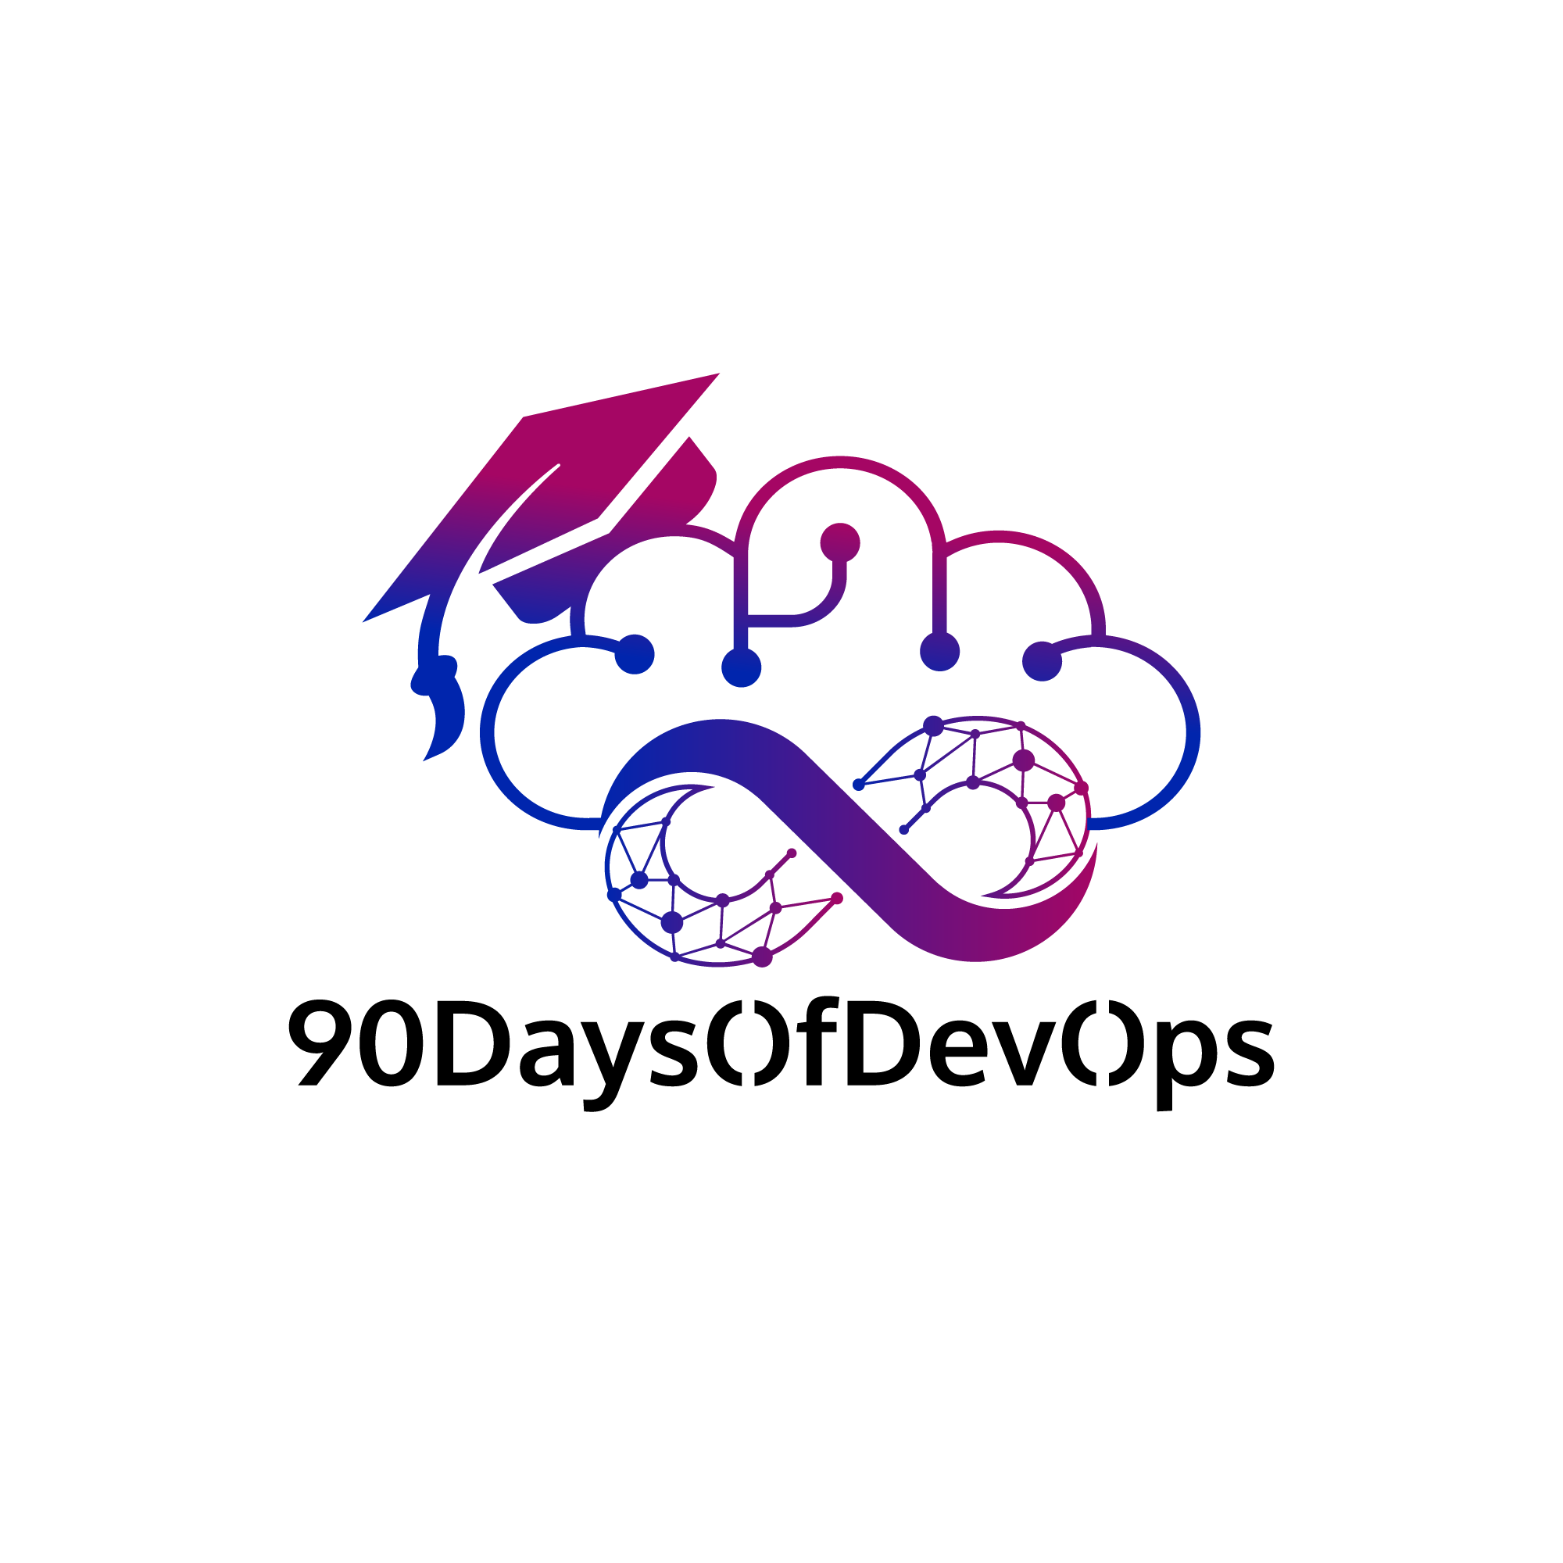 90DaysOfDevops Logo